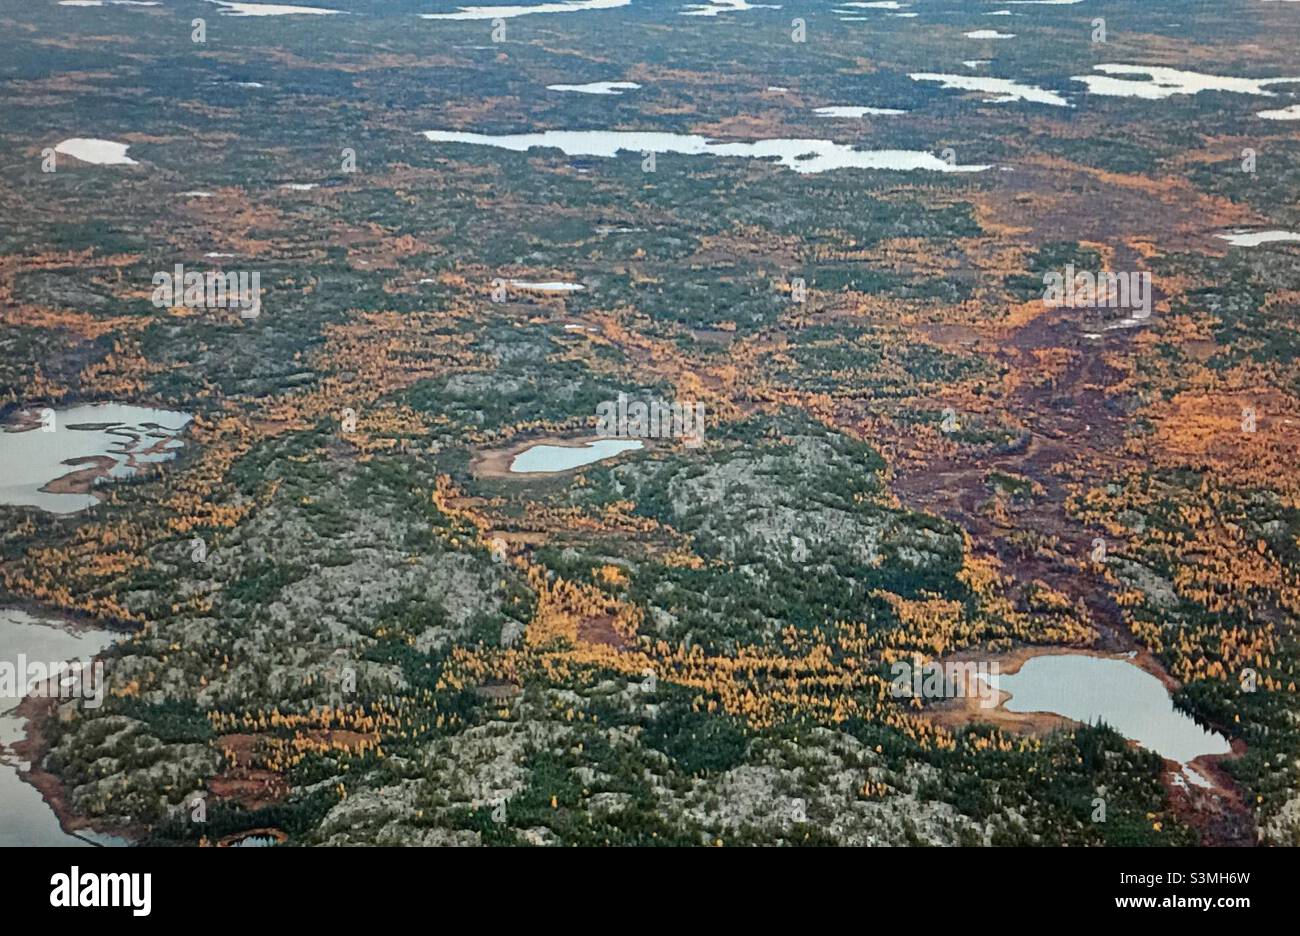 Kanadische Arktis-Tundra, Flugfotografie, Fotografie, Tundra, Nunavut, Kanada, Herbst, Oldies, September, Tamaraden, Wildnis, Wald, Seen, Sträucher Stockfoto